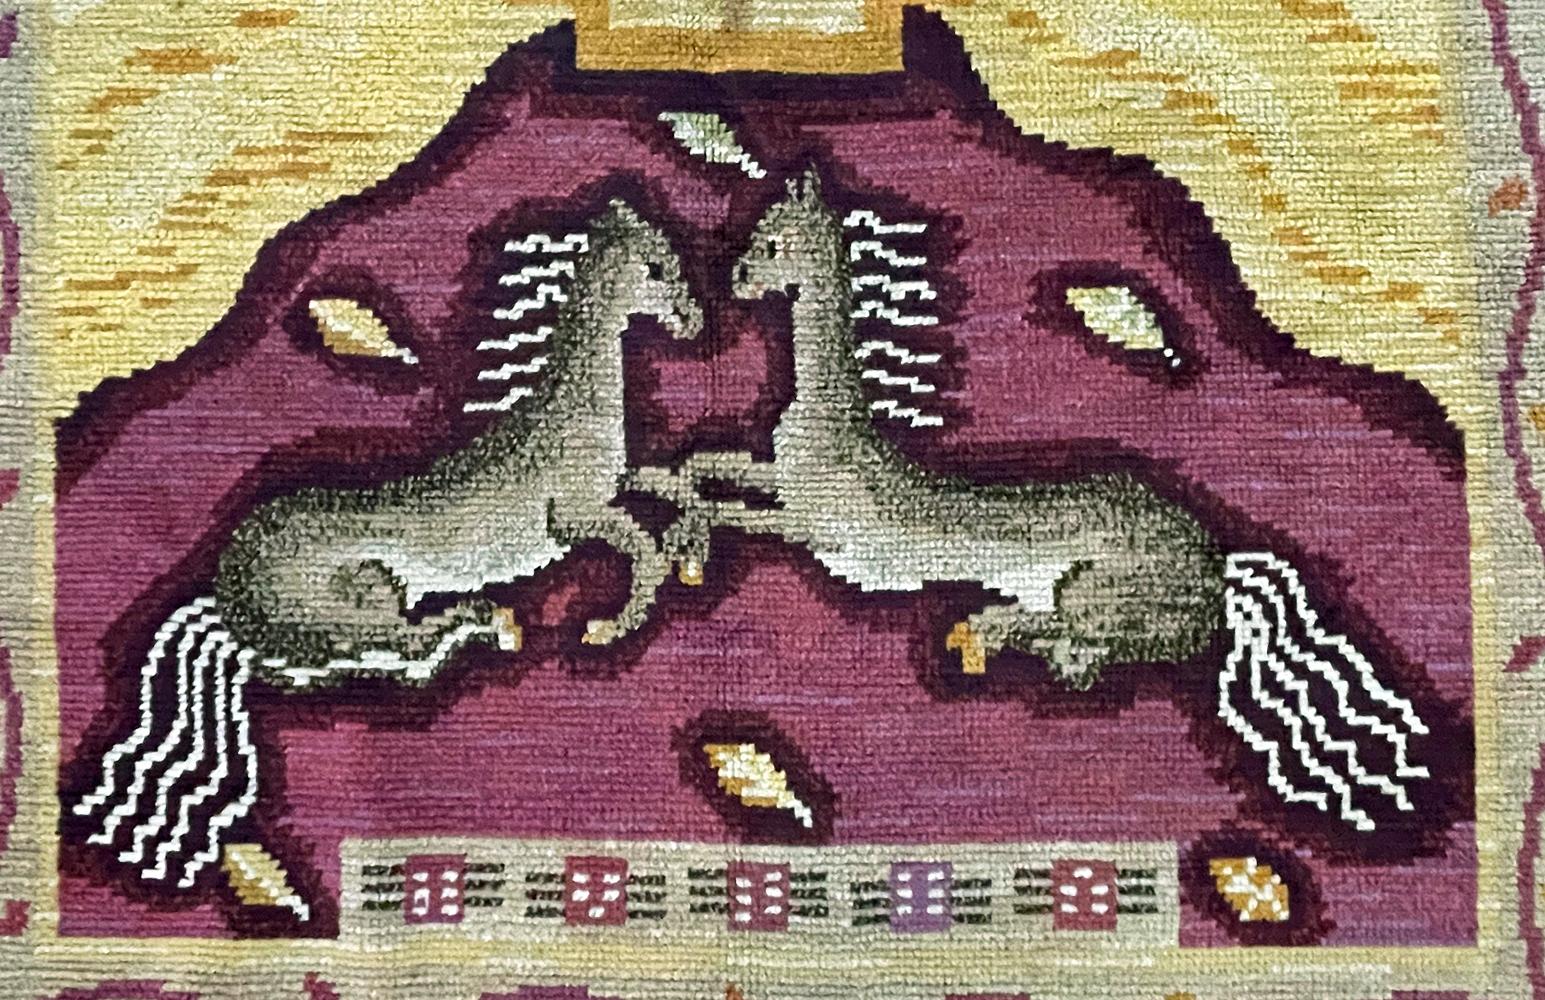 Tissé en 1934 selon un motif Art déco très stylisé avec des chevaux au galop et des oiseaux en vol, ce tapis extraordinaire a été fabriqué par la principale école de tissage de Suède, fondée par Johanna Brunsson au XIXe siècle. Cette pièce a été